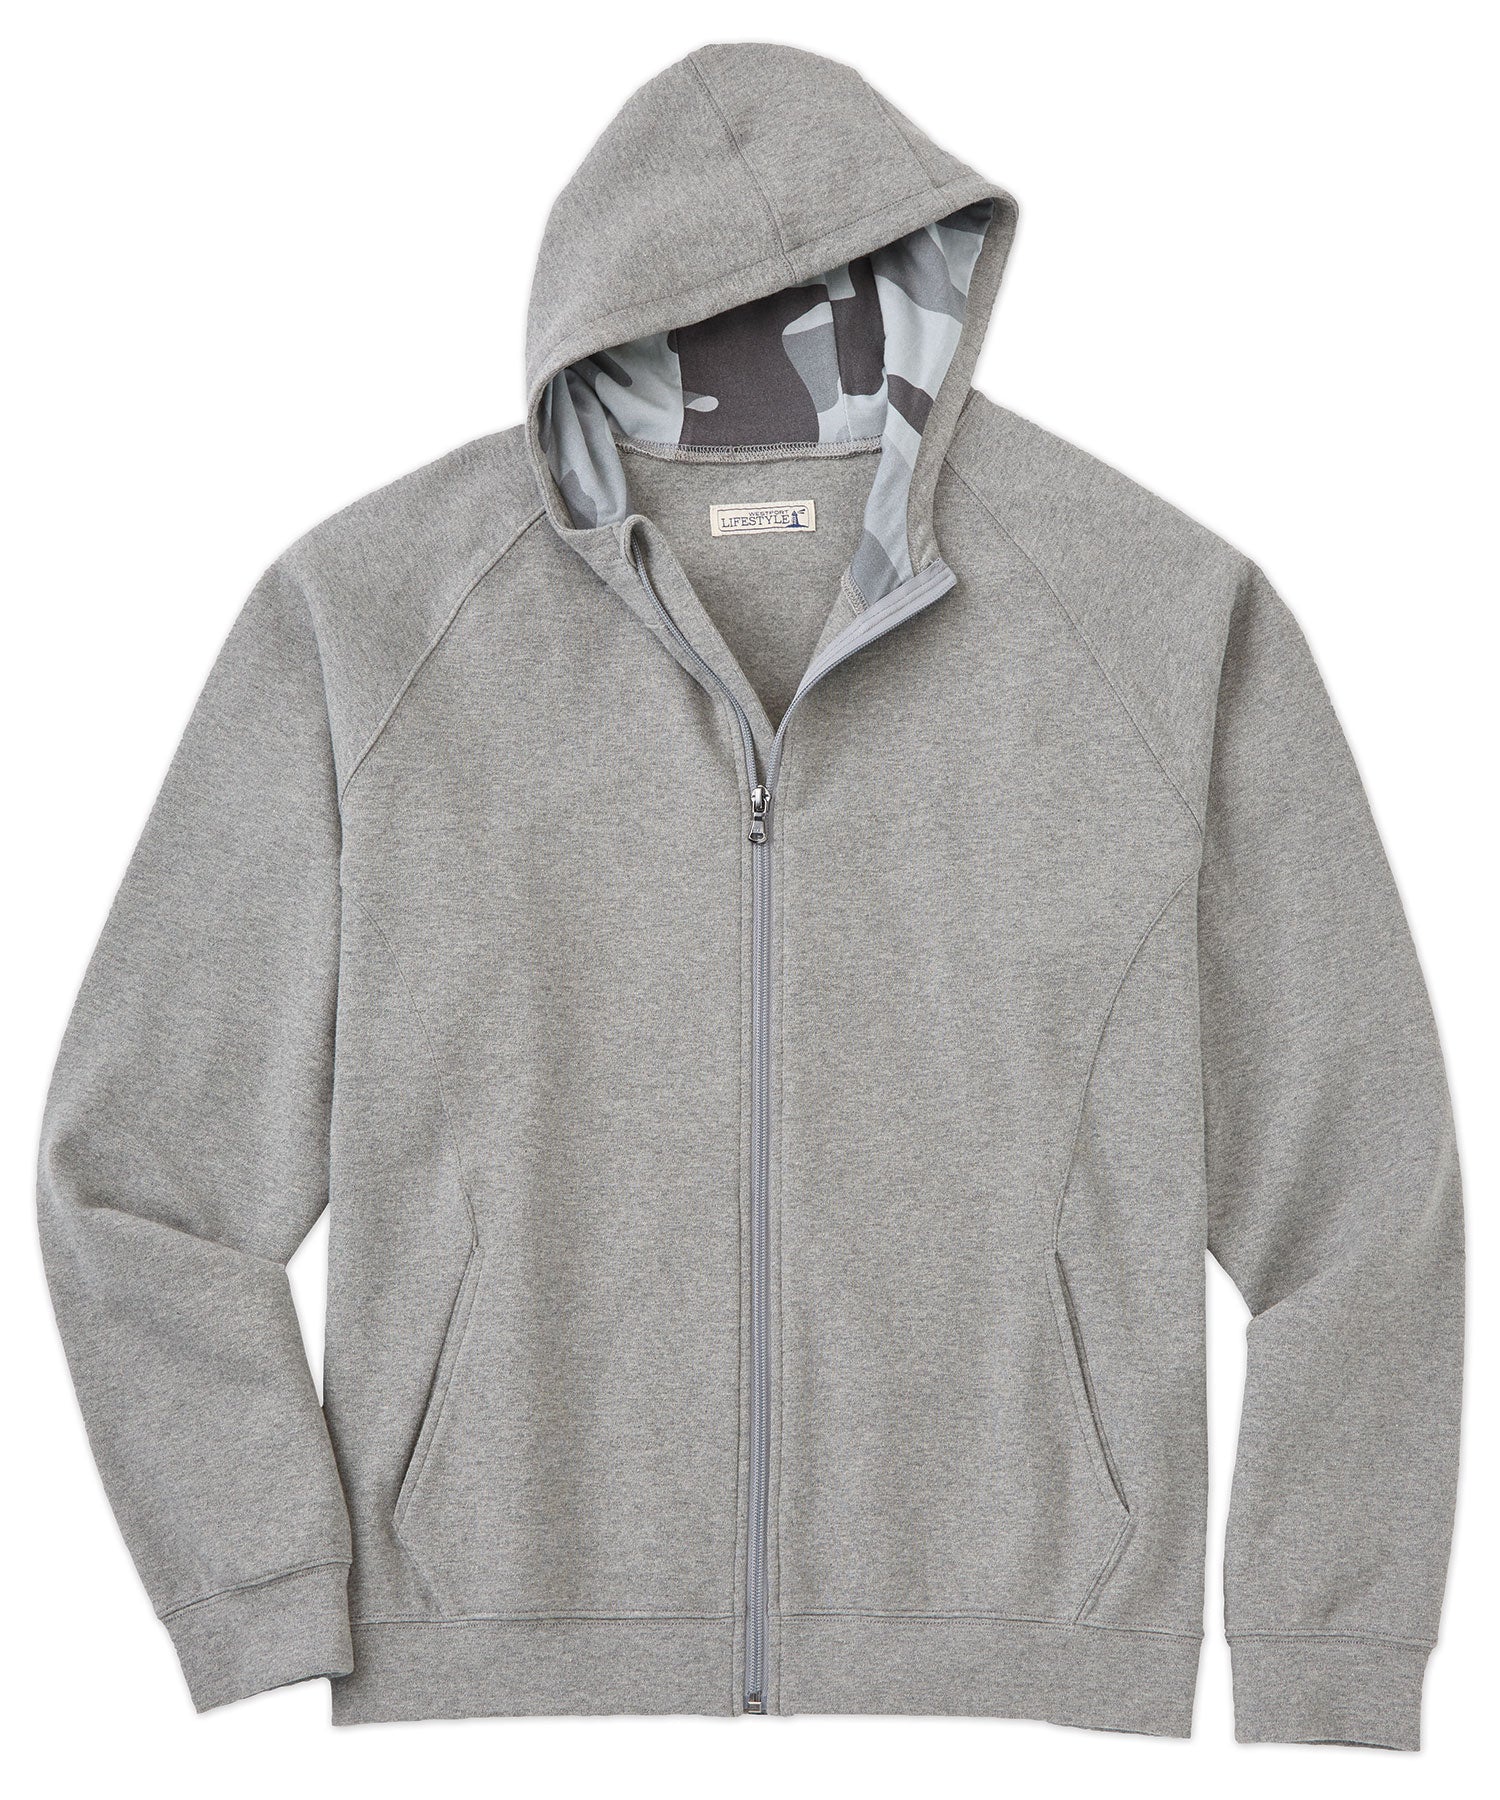 Westport Lifestyle Luxe Fleece Full Zip Hooded Jacket